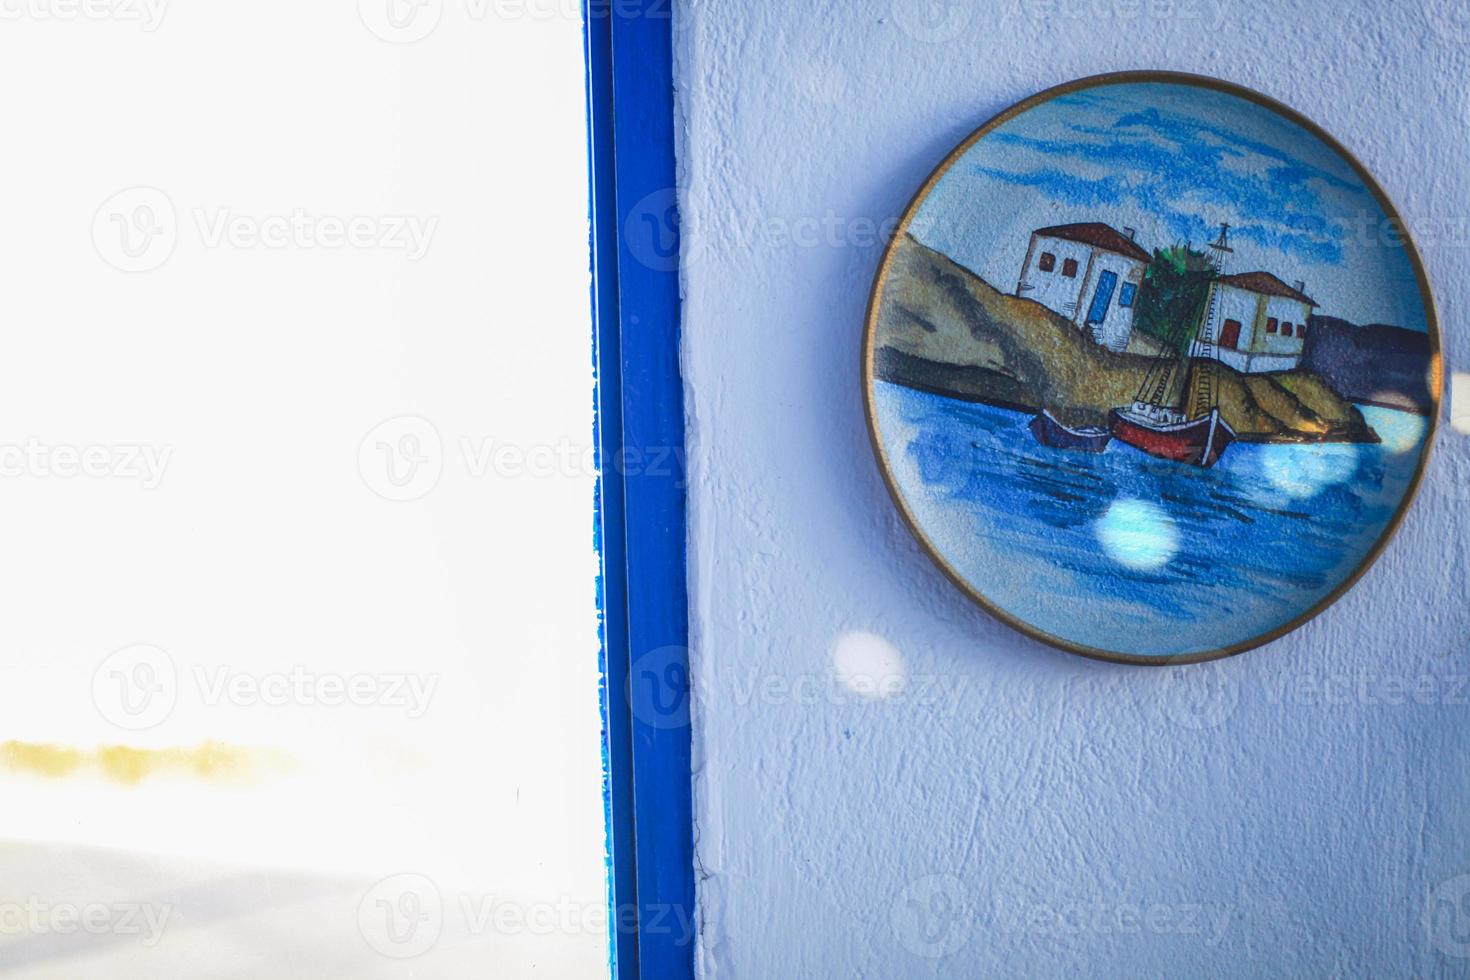 típica puerta azul con escaleras. isla de santorini, grecia foto